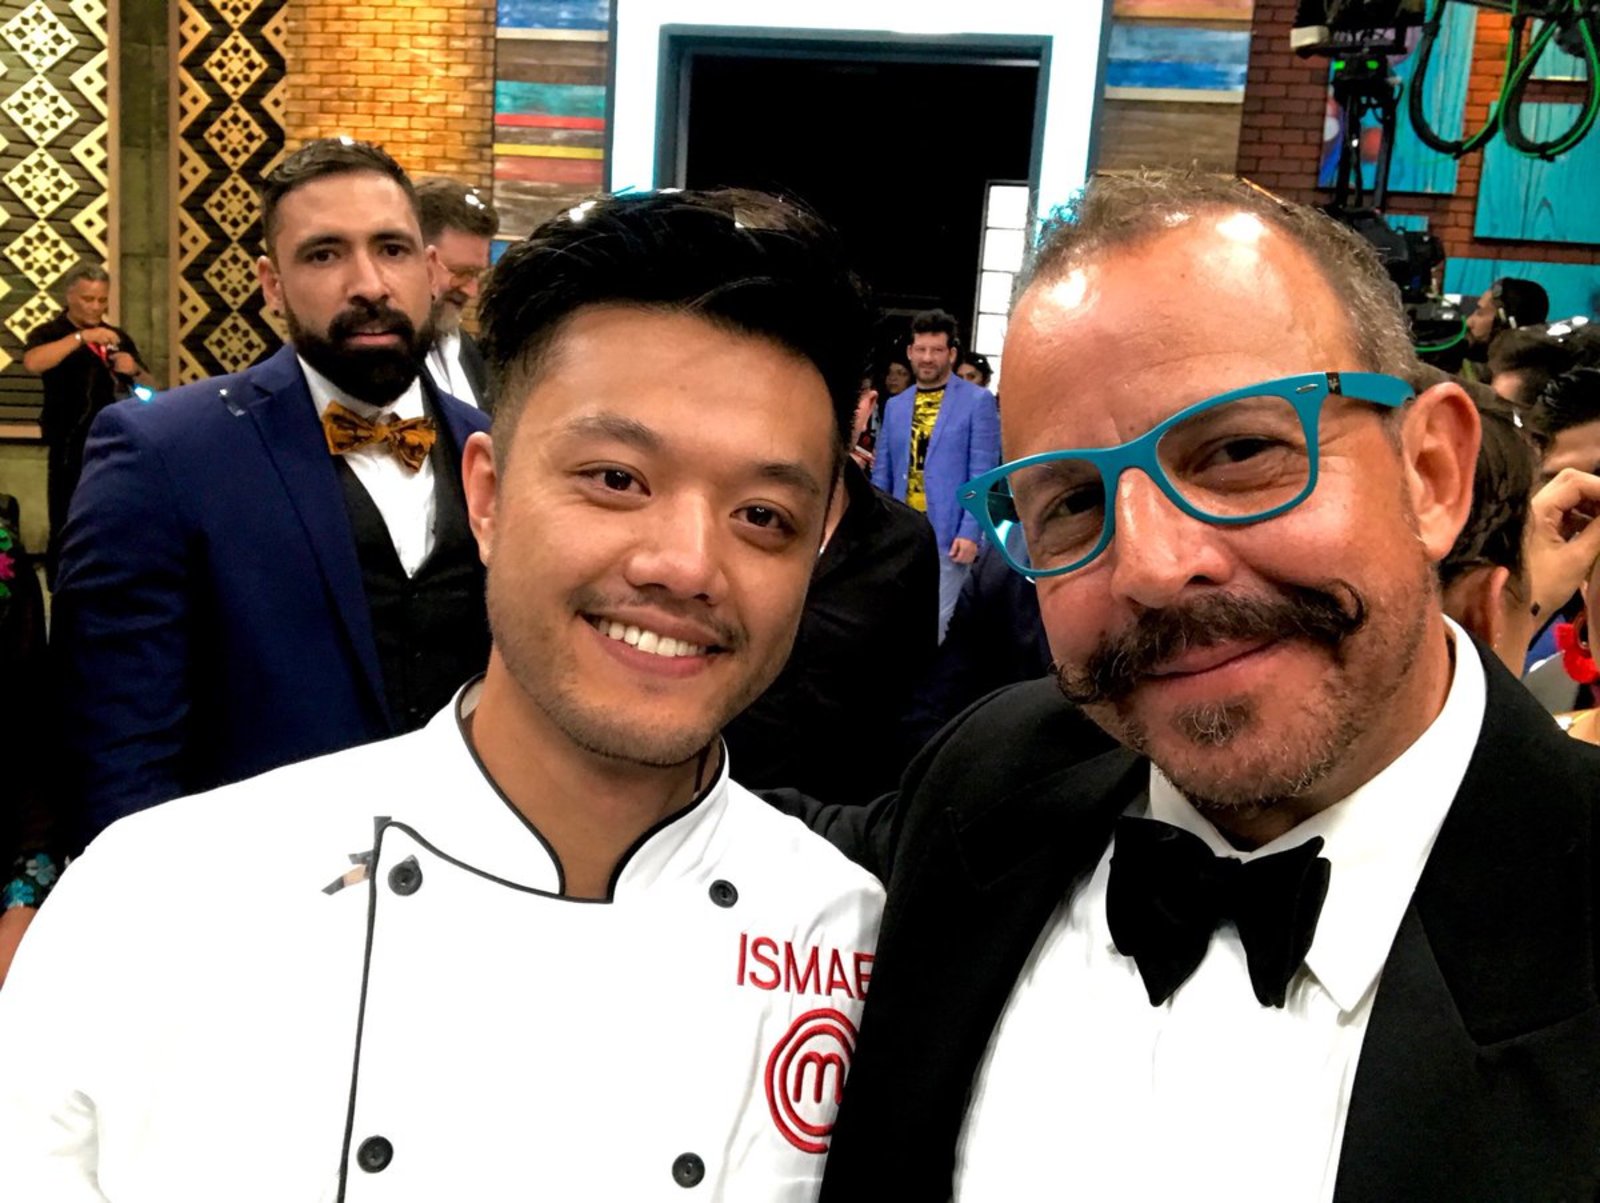 Contentos. El chef Benito Molina publicó una fotografía donde aparece con el ganador Ismael Zhu Li. (ESPECIAL)